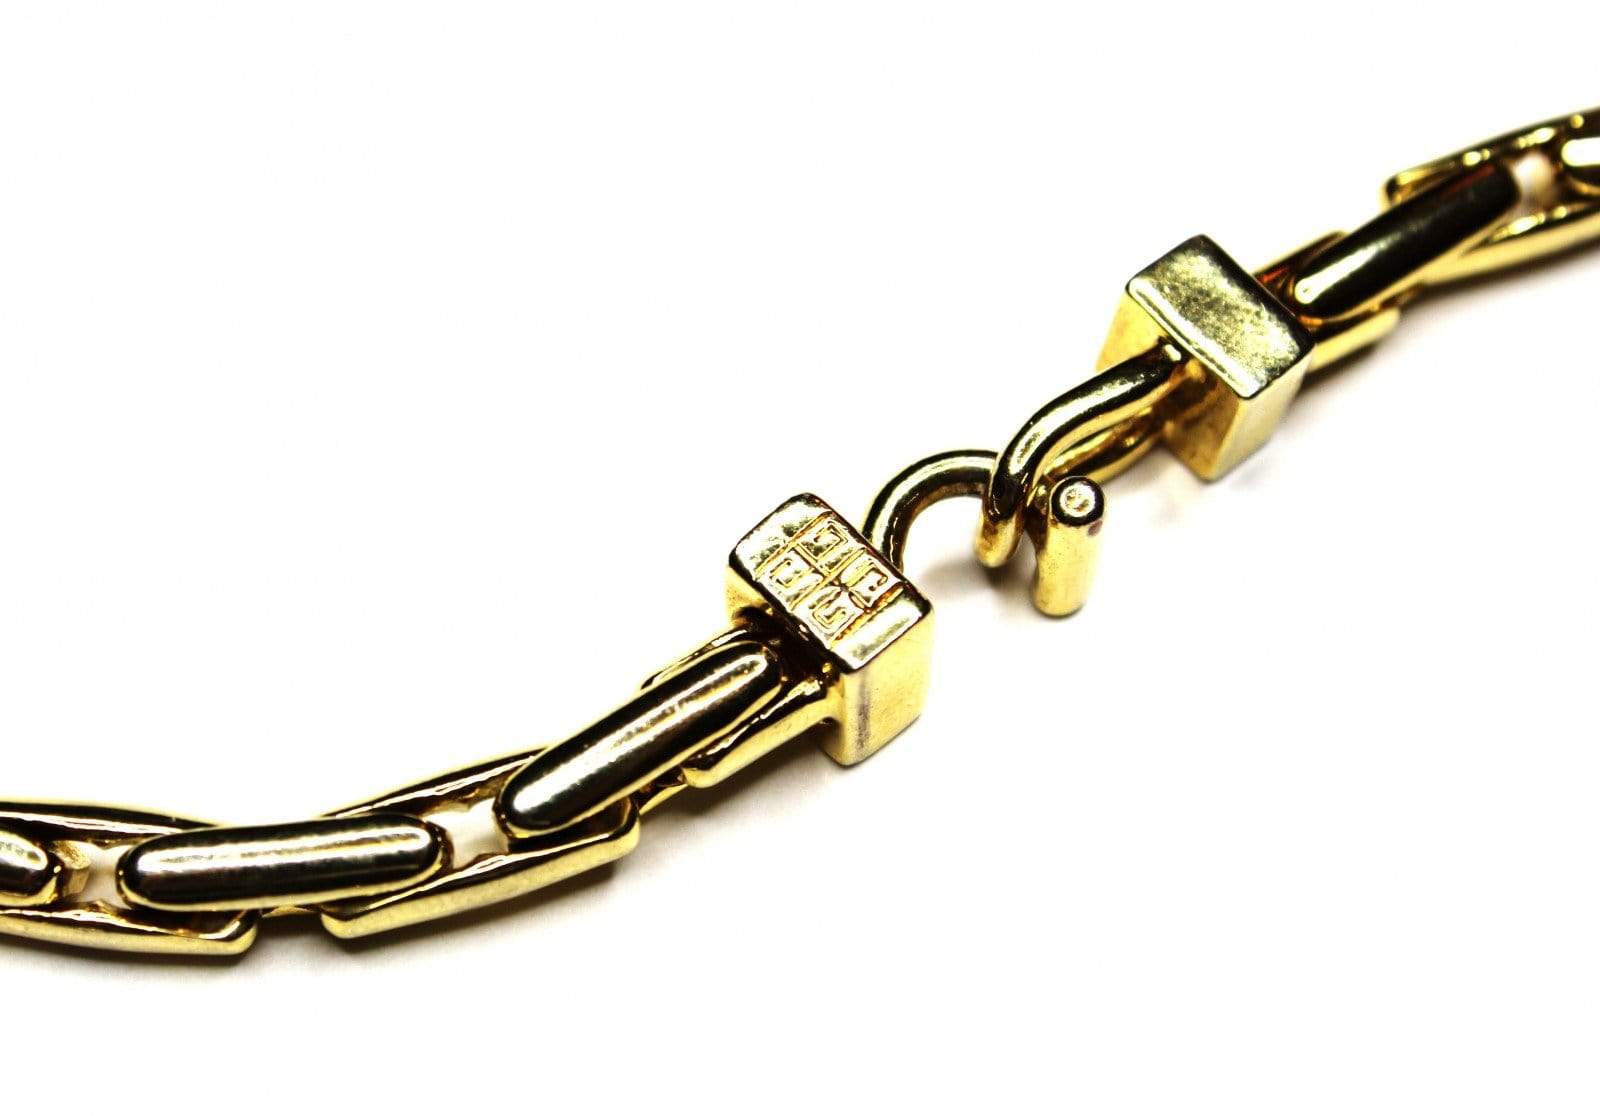 Gold Givenchy Bar Link Chain RSTKD Vintage